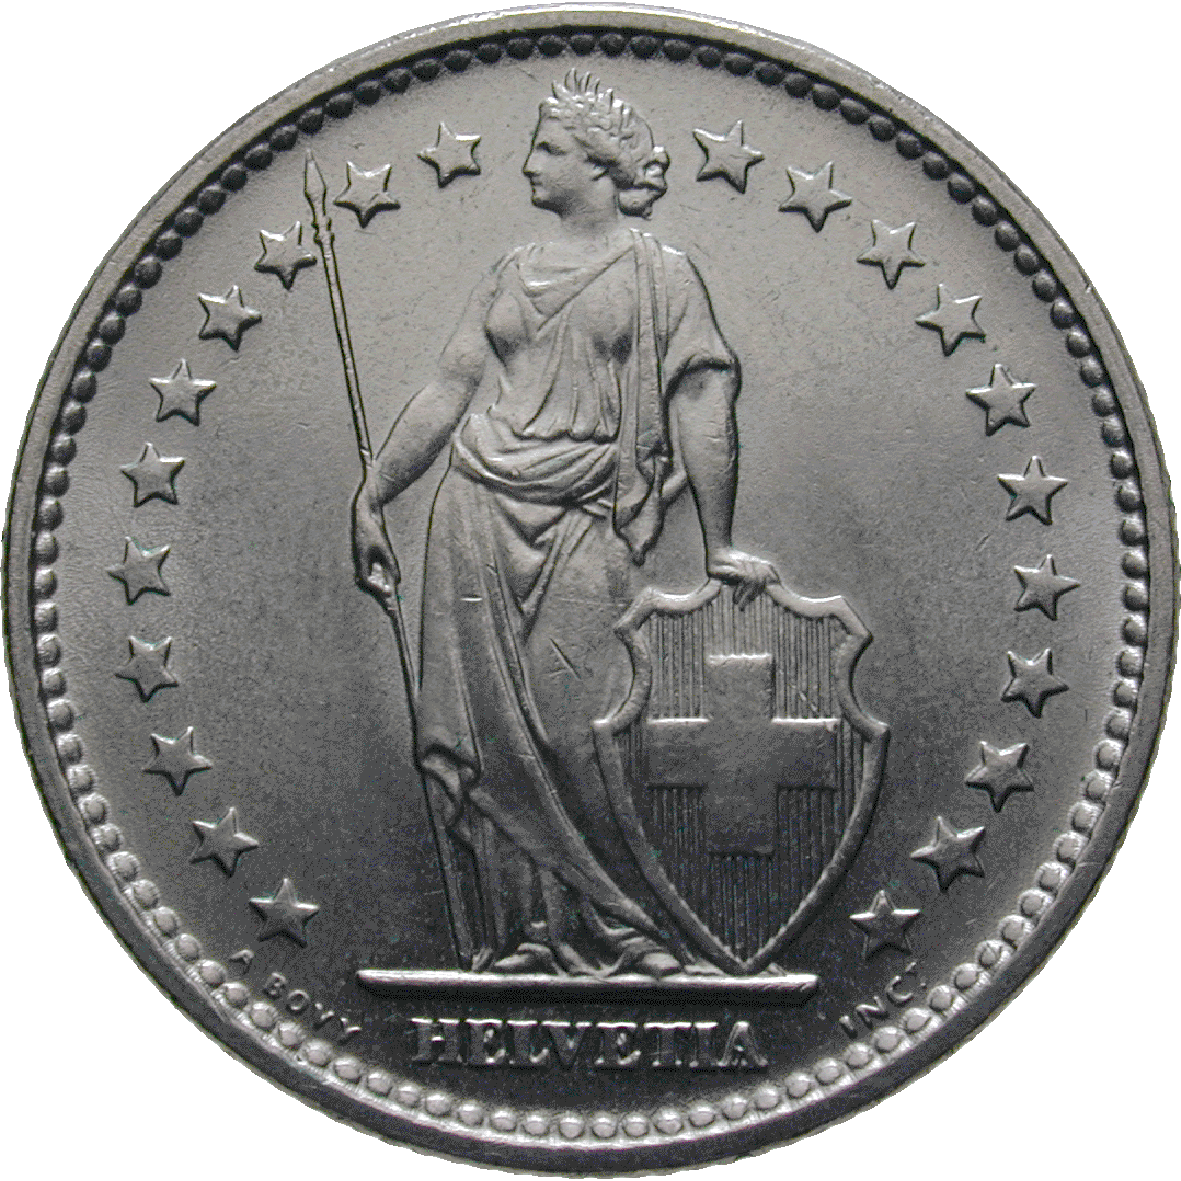 Schweizerische Eidgenossenschaft, 2 Franken 1968  (obverse)